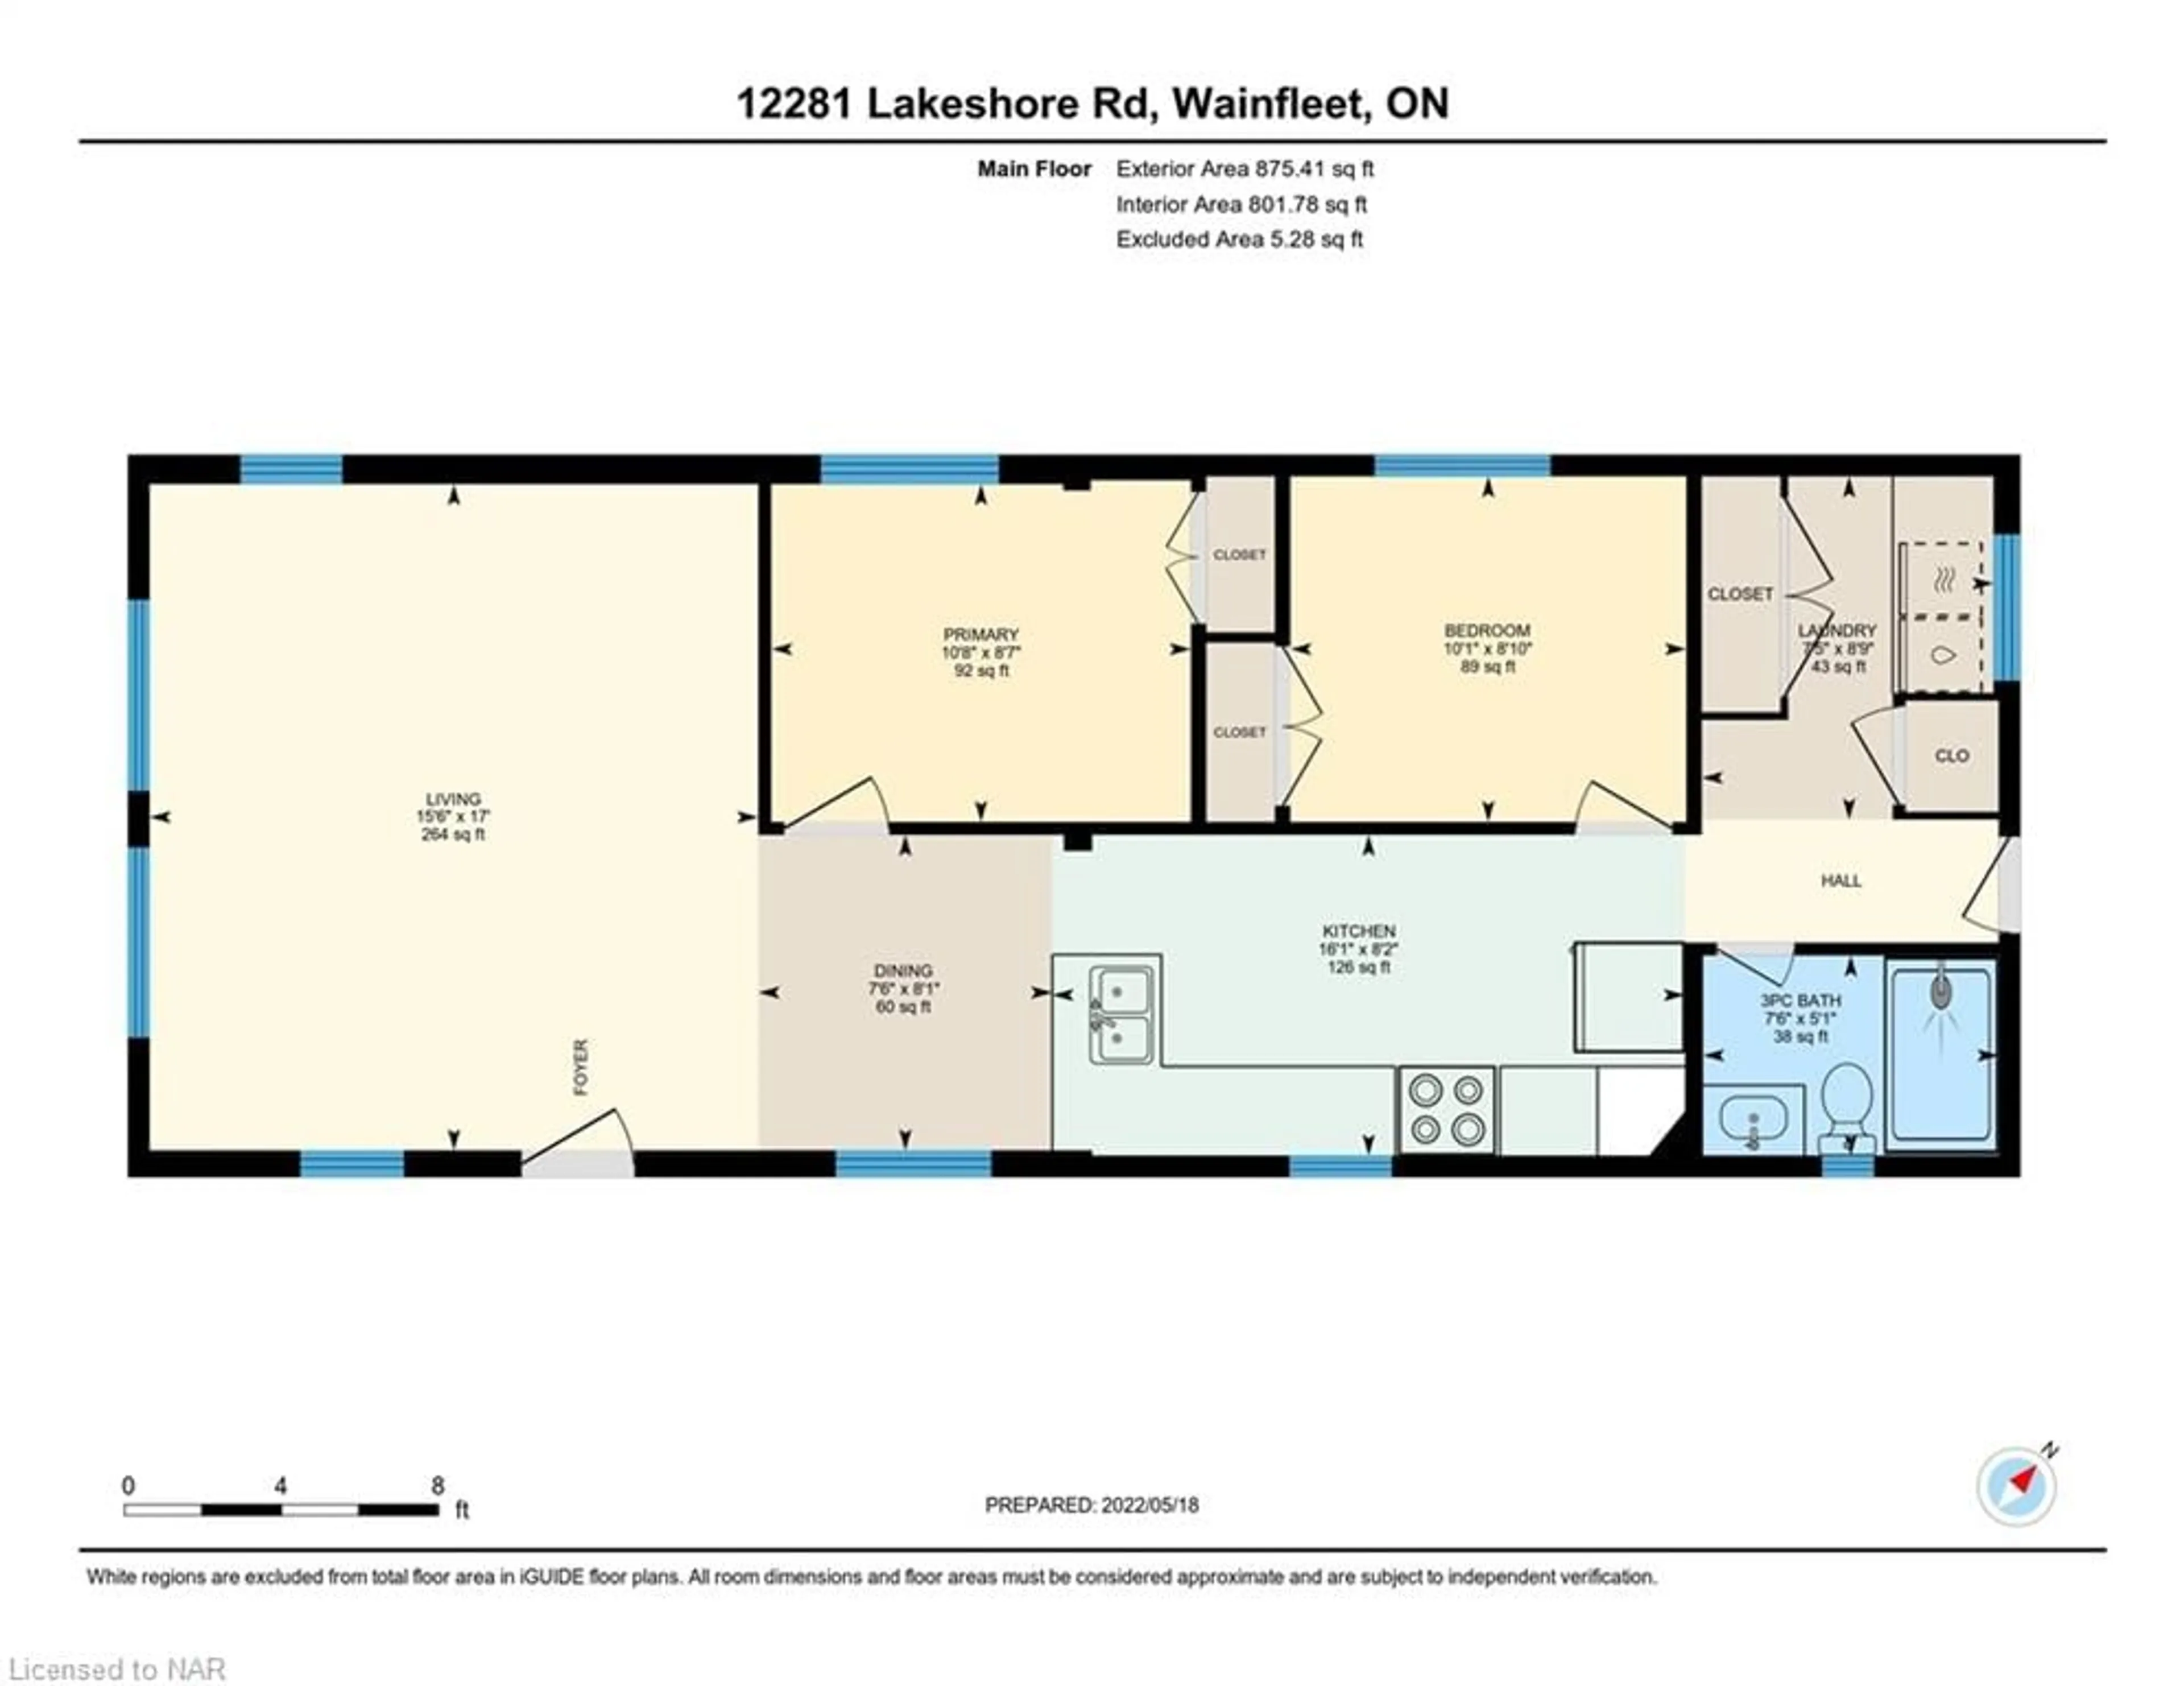 Floor plan for 12281 Lakeshore Rd, Wainfleet Ontario L0S 1V0